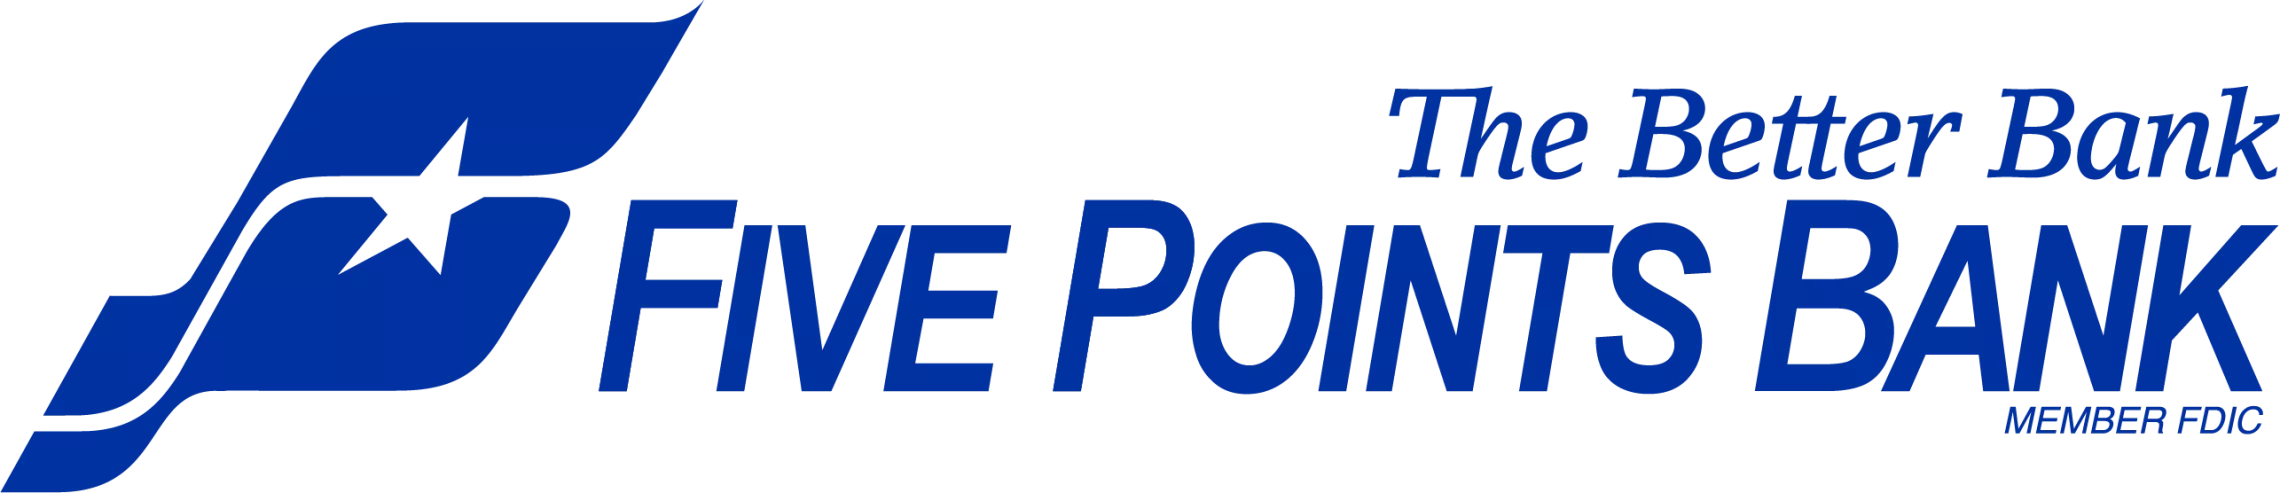 Five Points Bank logo